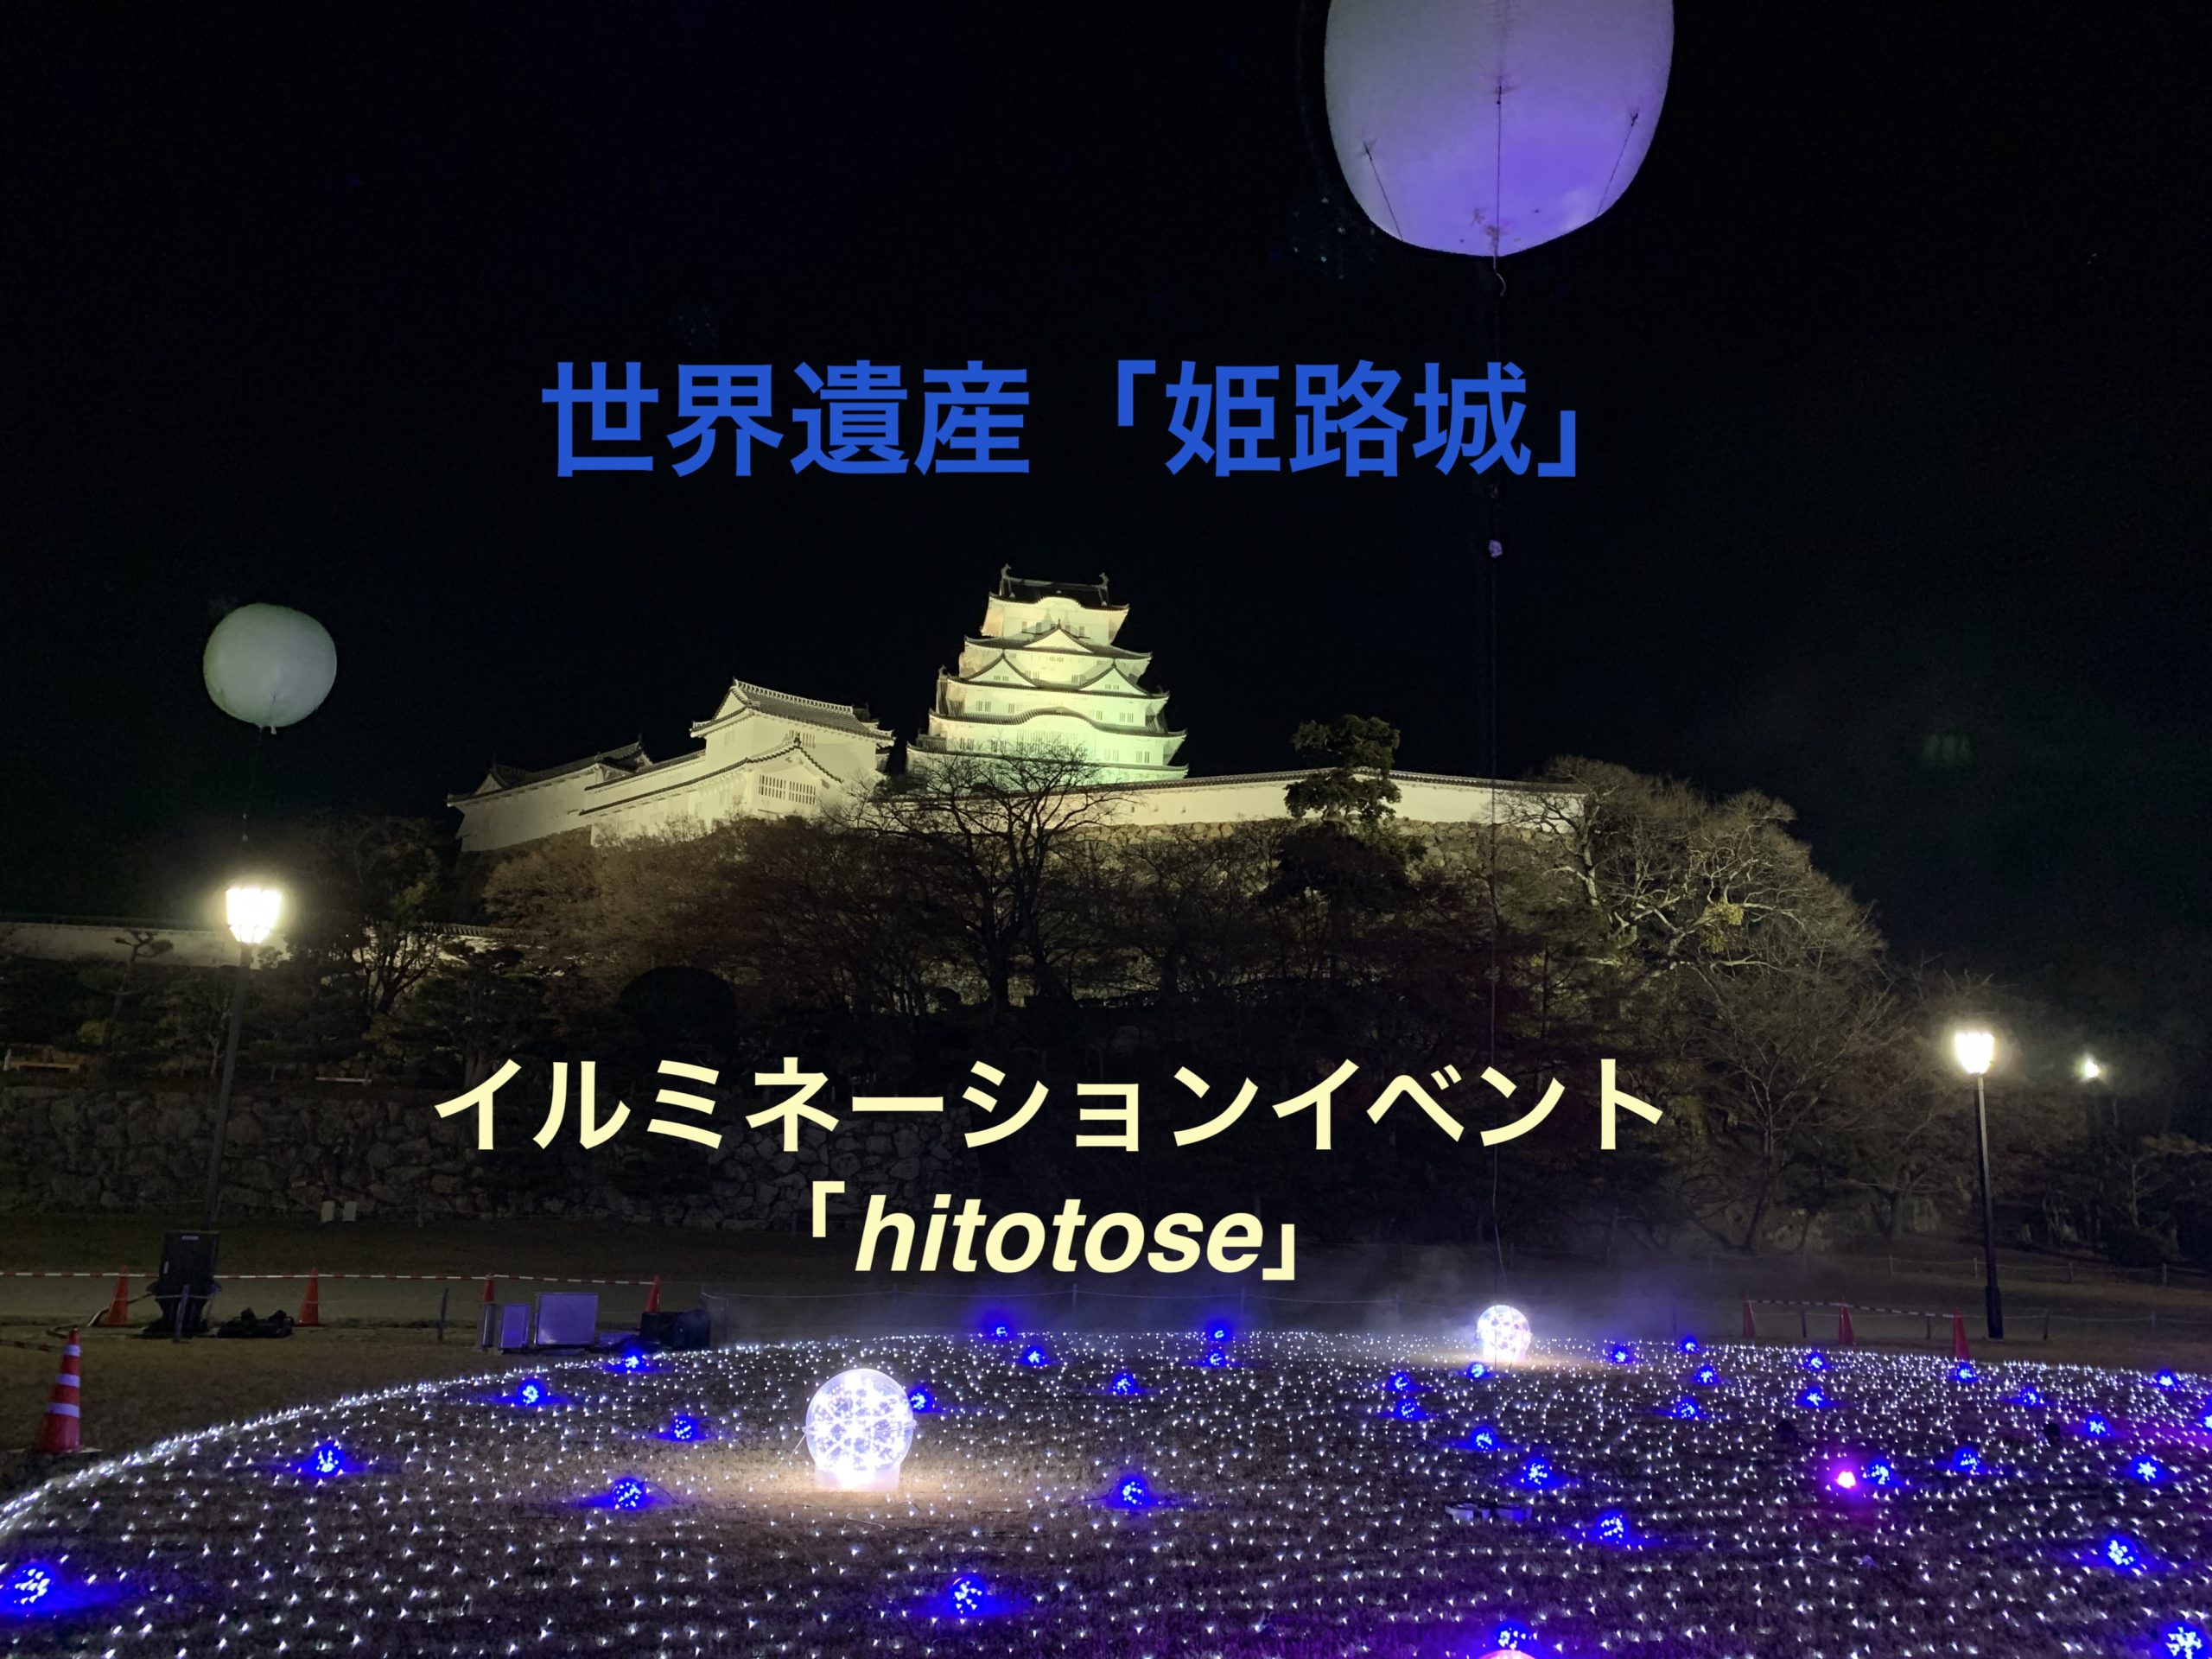 姫路城冬のイルミネーション ライトアップ イベント Hitotose 開催 入場無料 旅ブログ